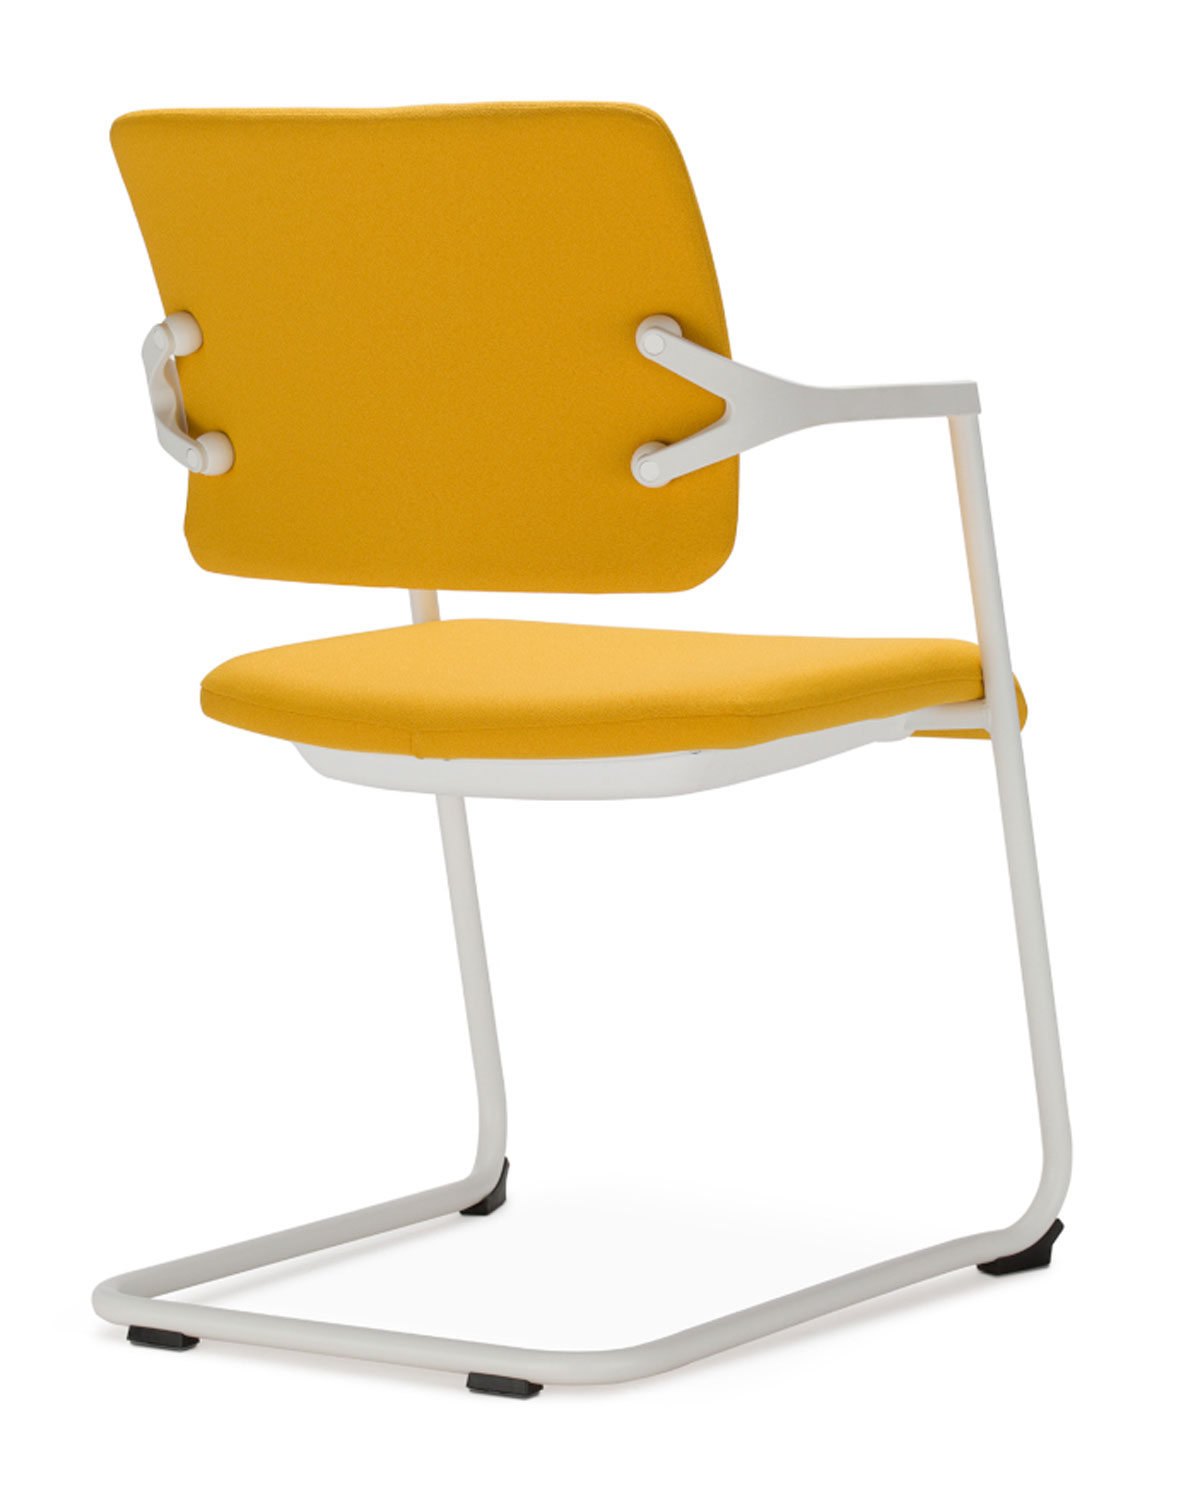 Nowy Styl 2ME-CFP konferenční židle žlutá